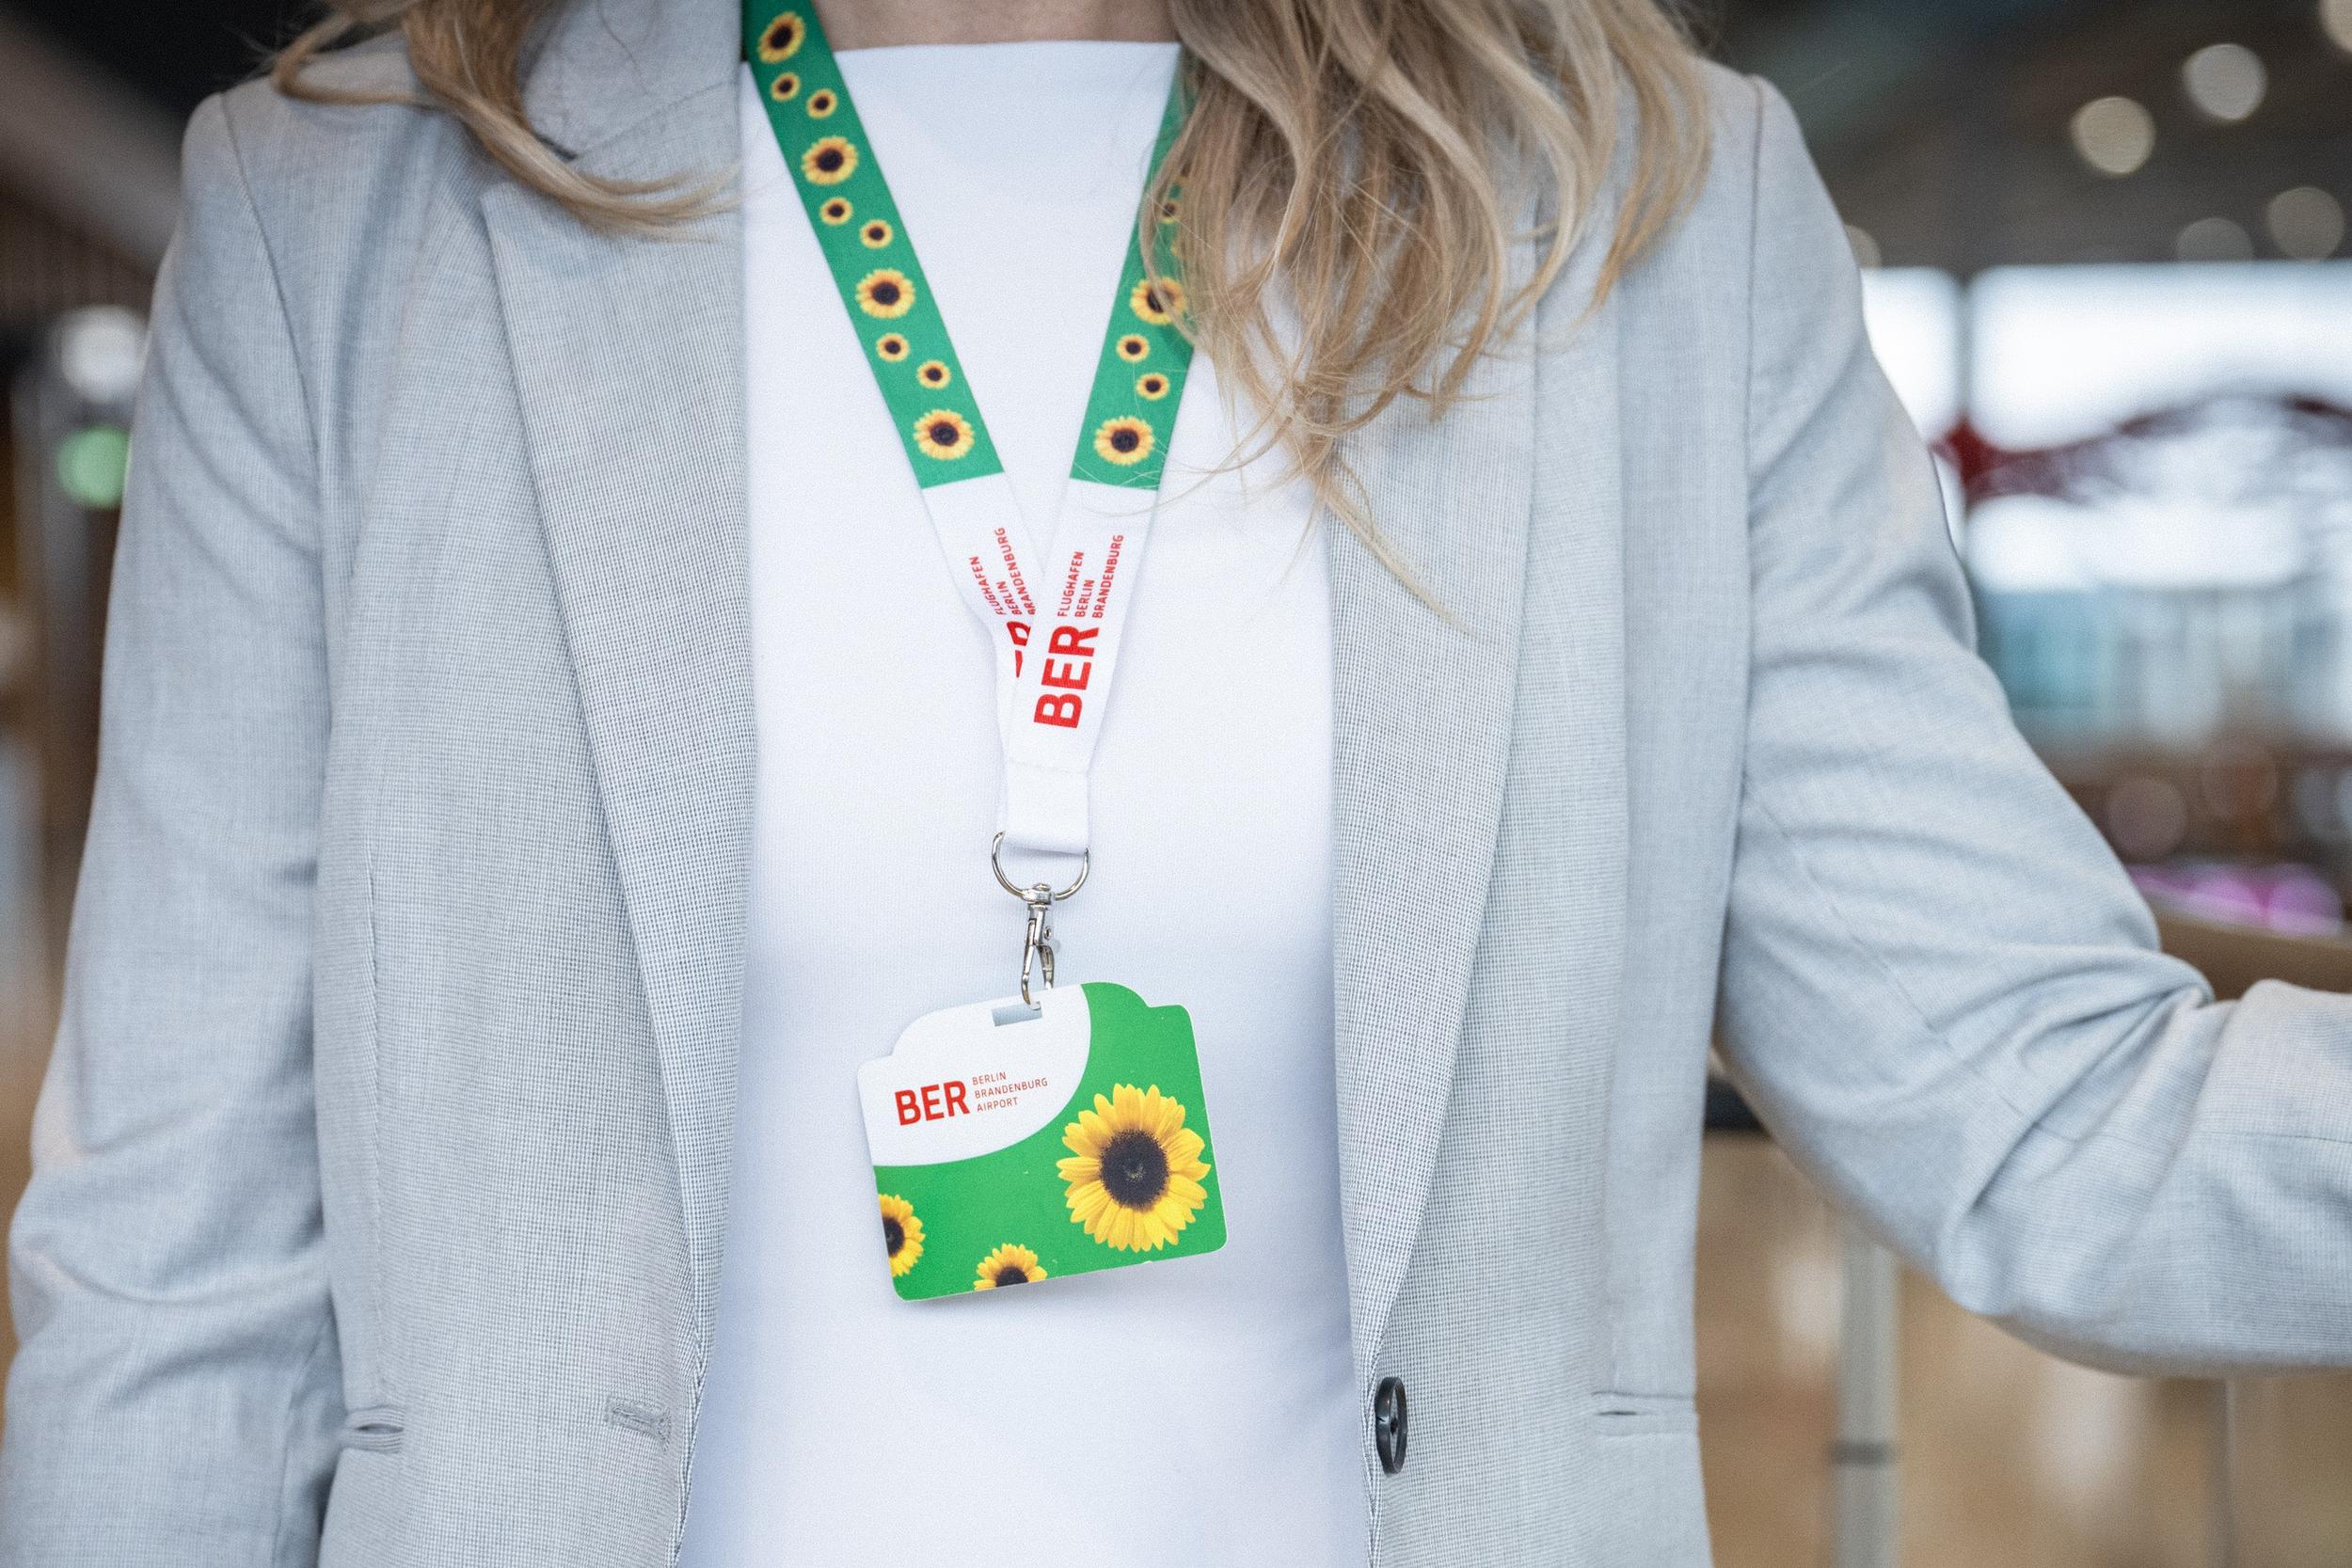 Eine Frau mit schulterlangem Haar, weißem Shirt und grauem Jackett hat das Sunflower-Trageband umgehängt. Dieses ist in den Farben grün-weiß gehalten und mit Sonnenblumen und den roten BER-Schriftzügen des Flughafens gestaltet. Um sie herum sieht man verschwommen eine Flughafenatmosphäre.